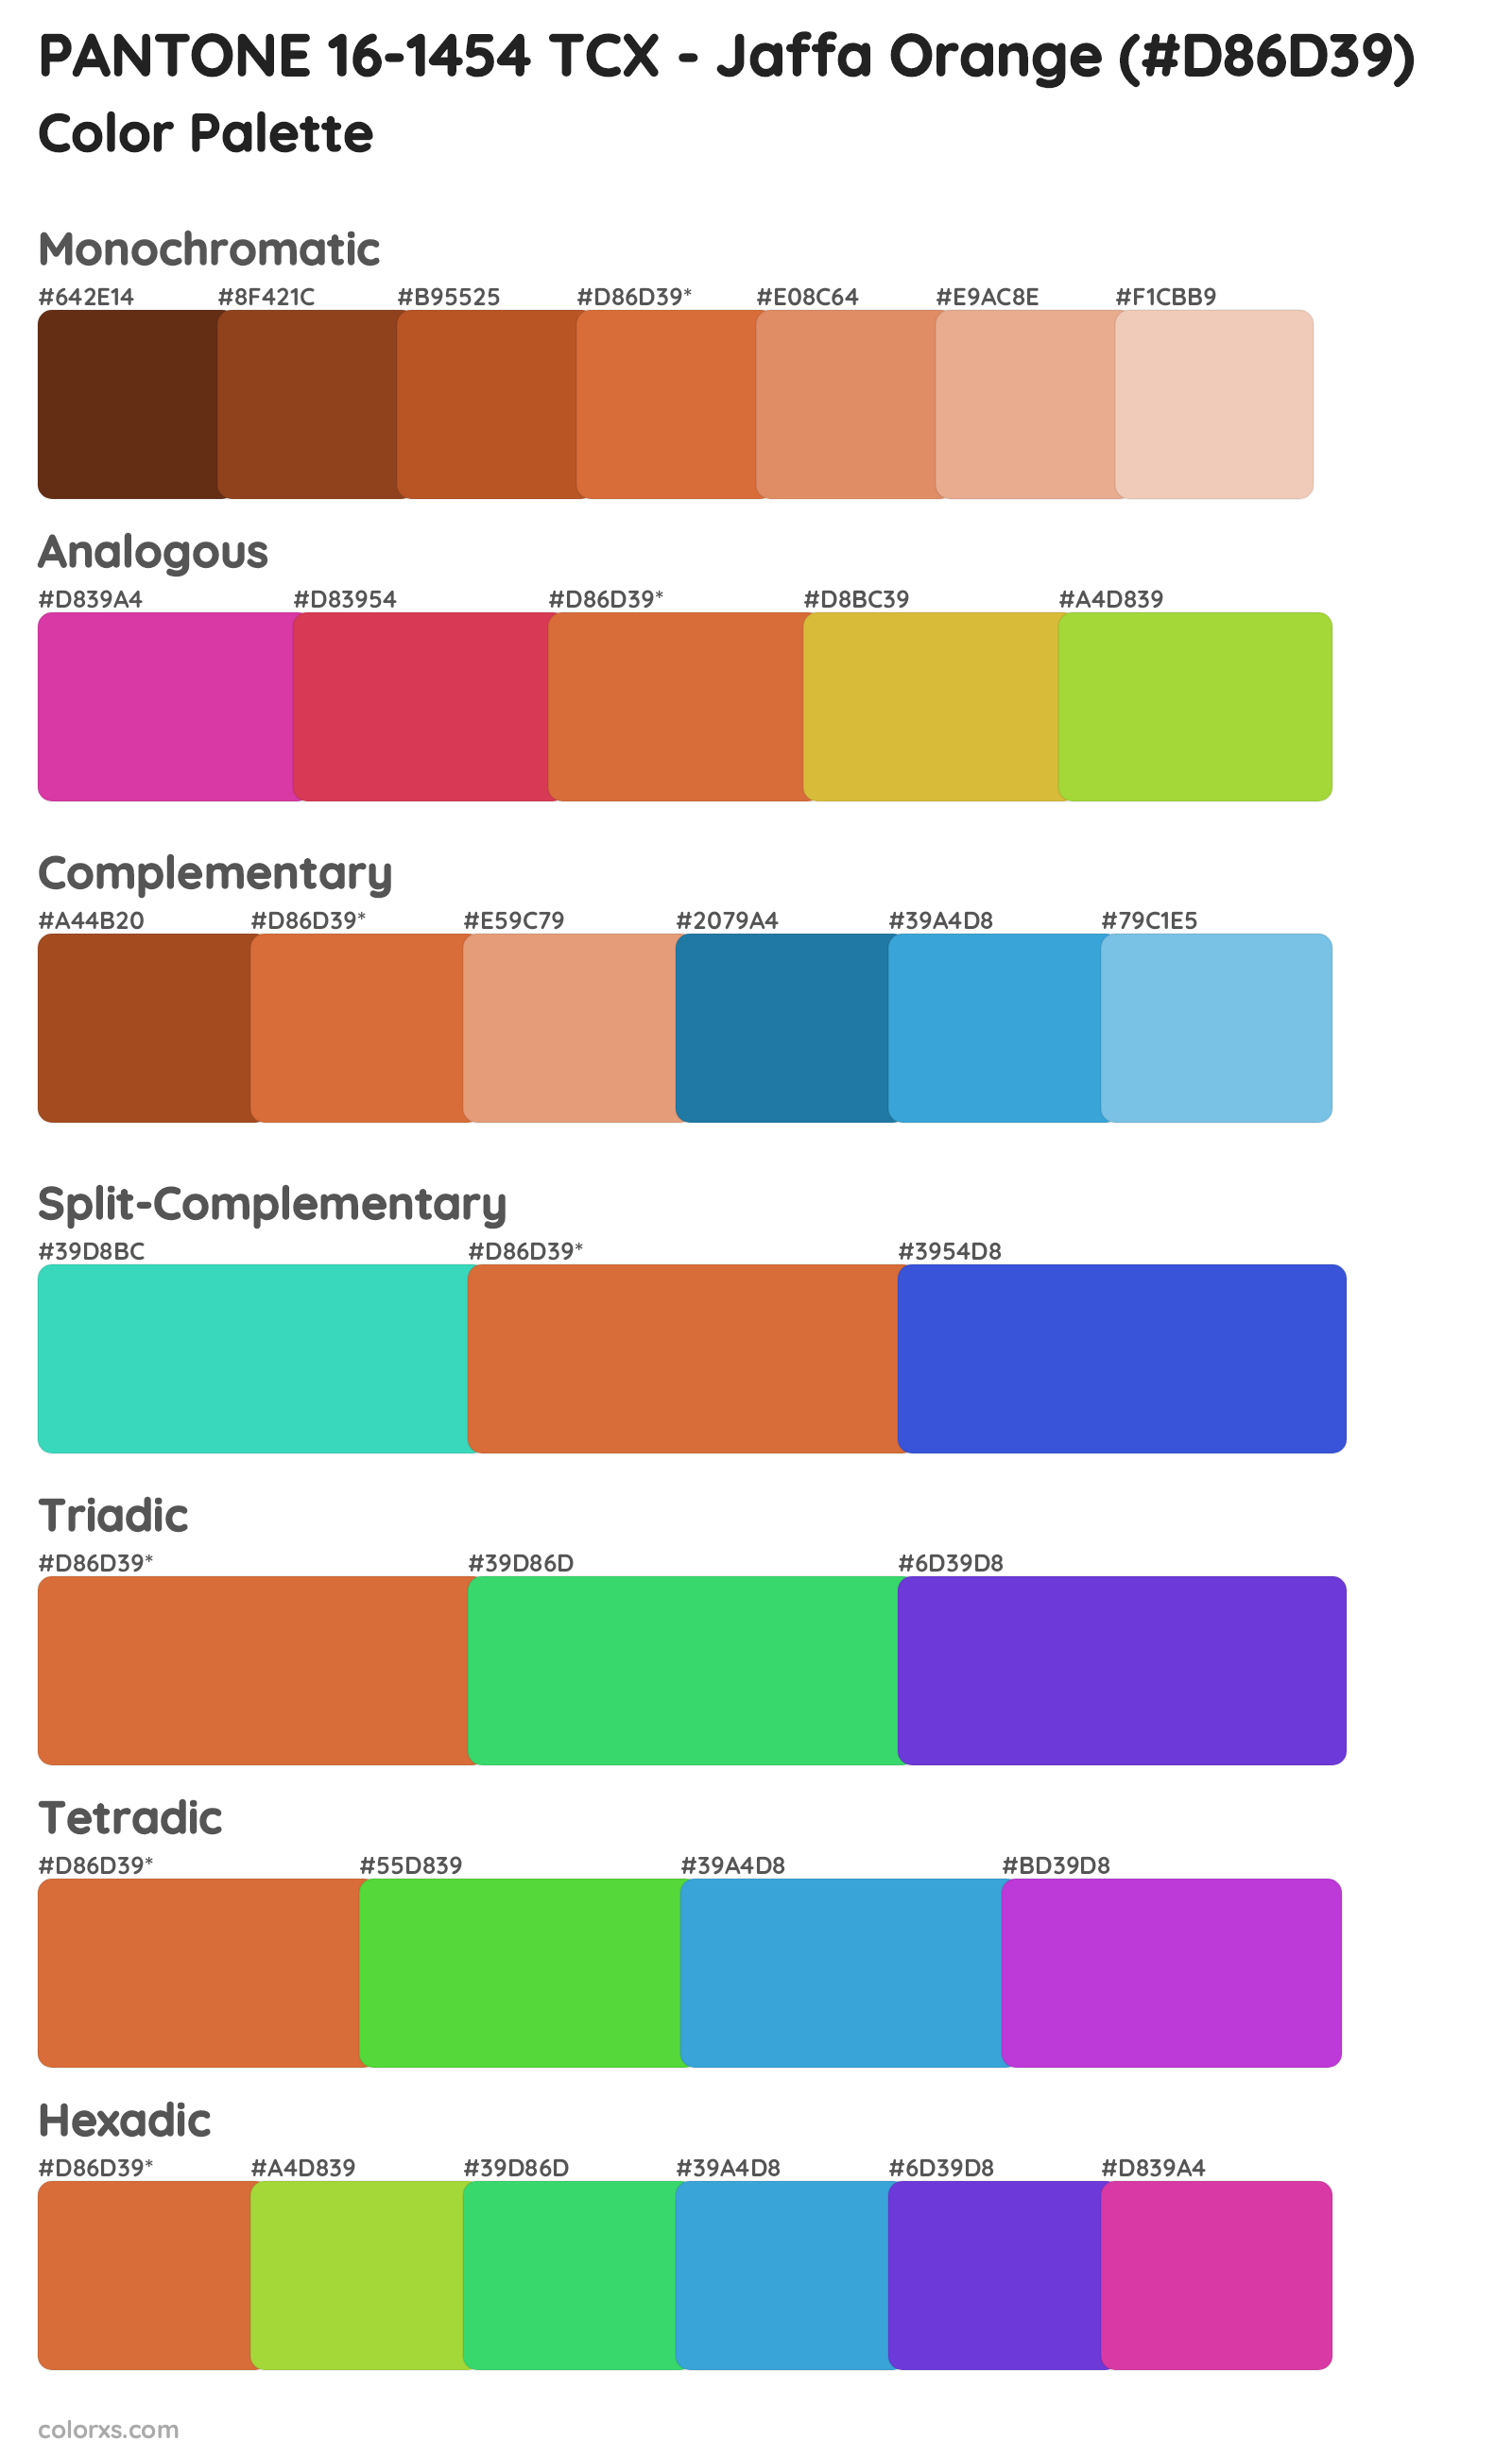 PANTONE 16-1454 TCX - Jaffa Orange Color Scheme Palettes